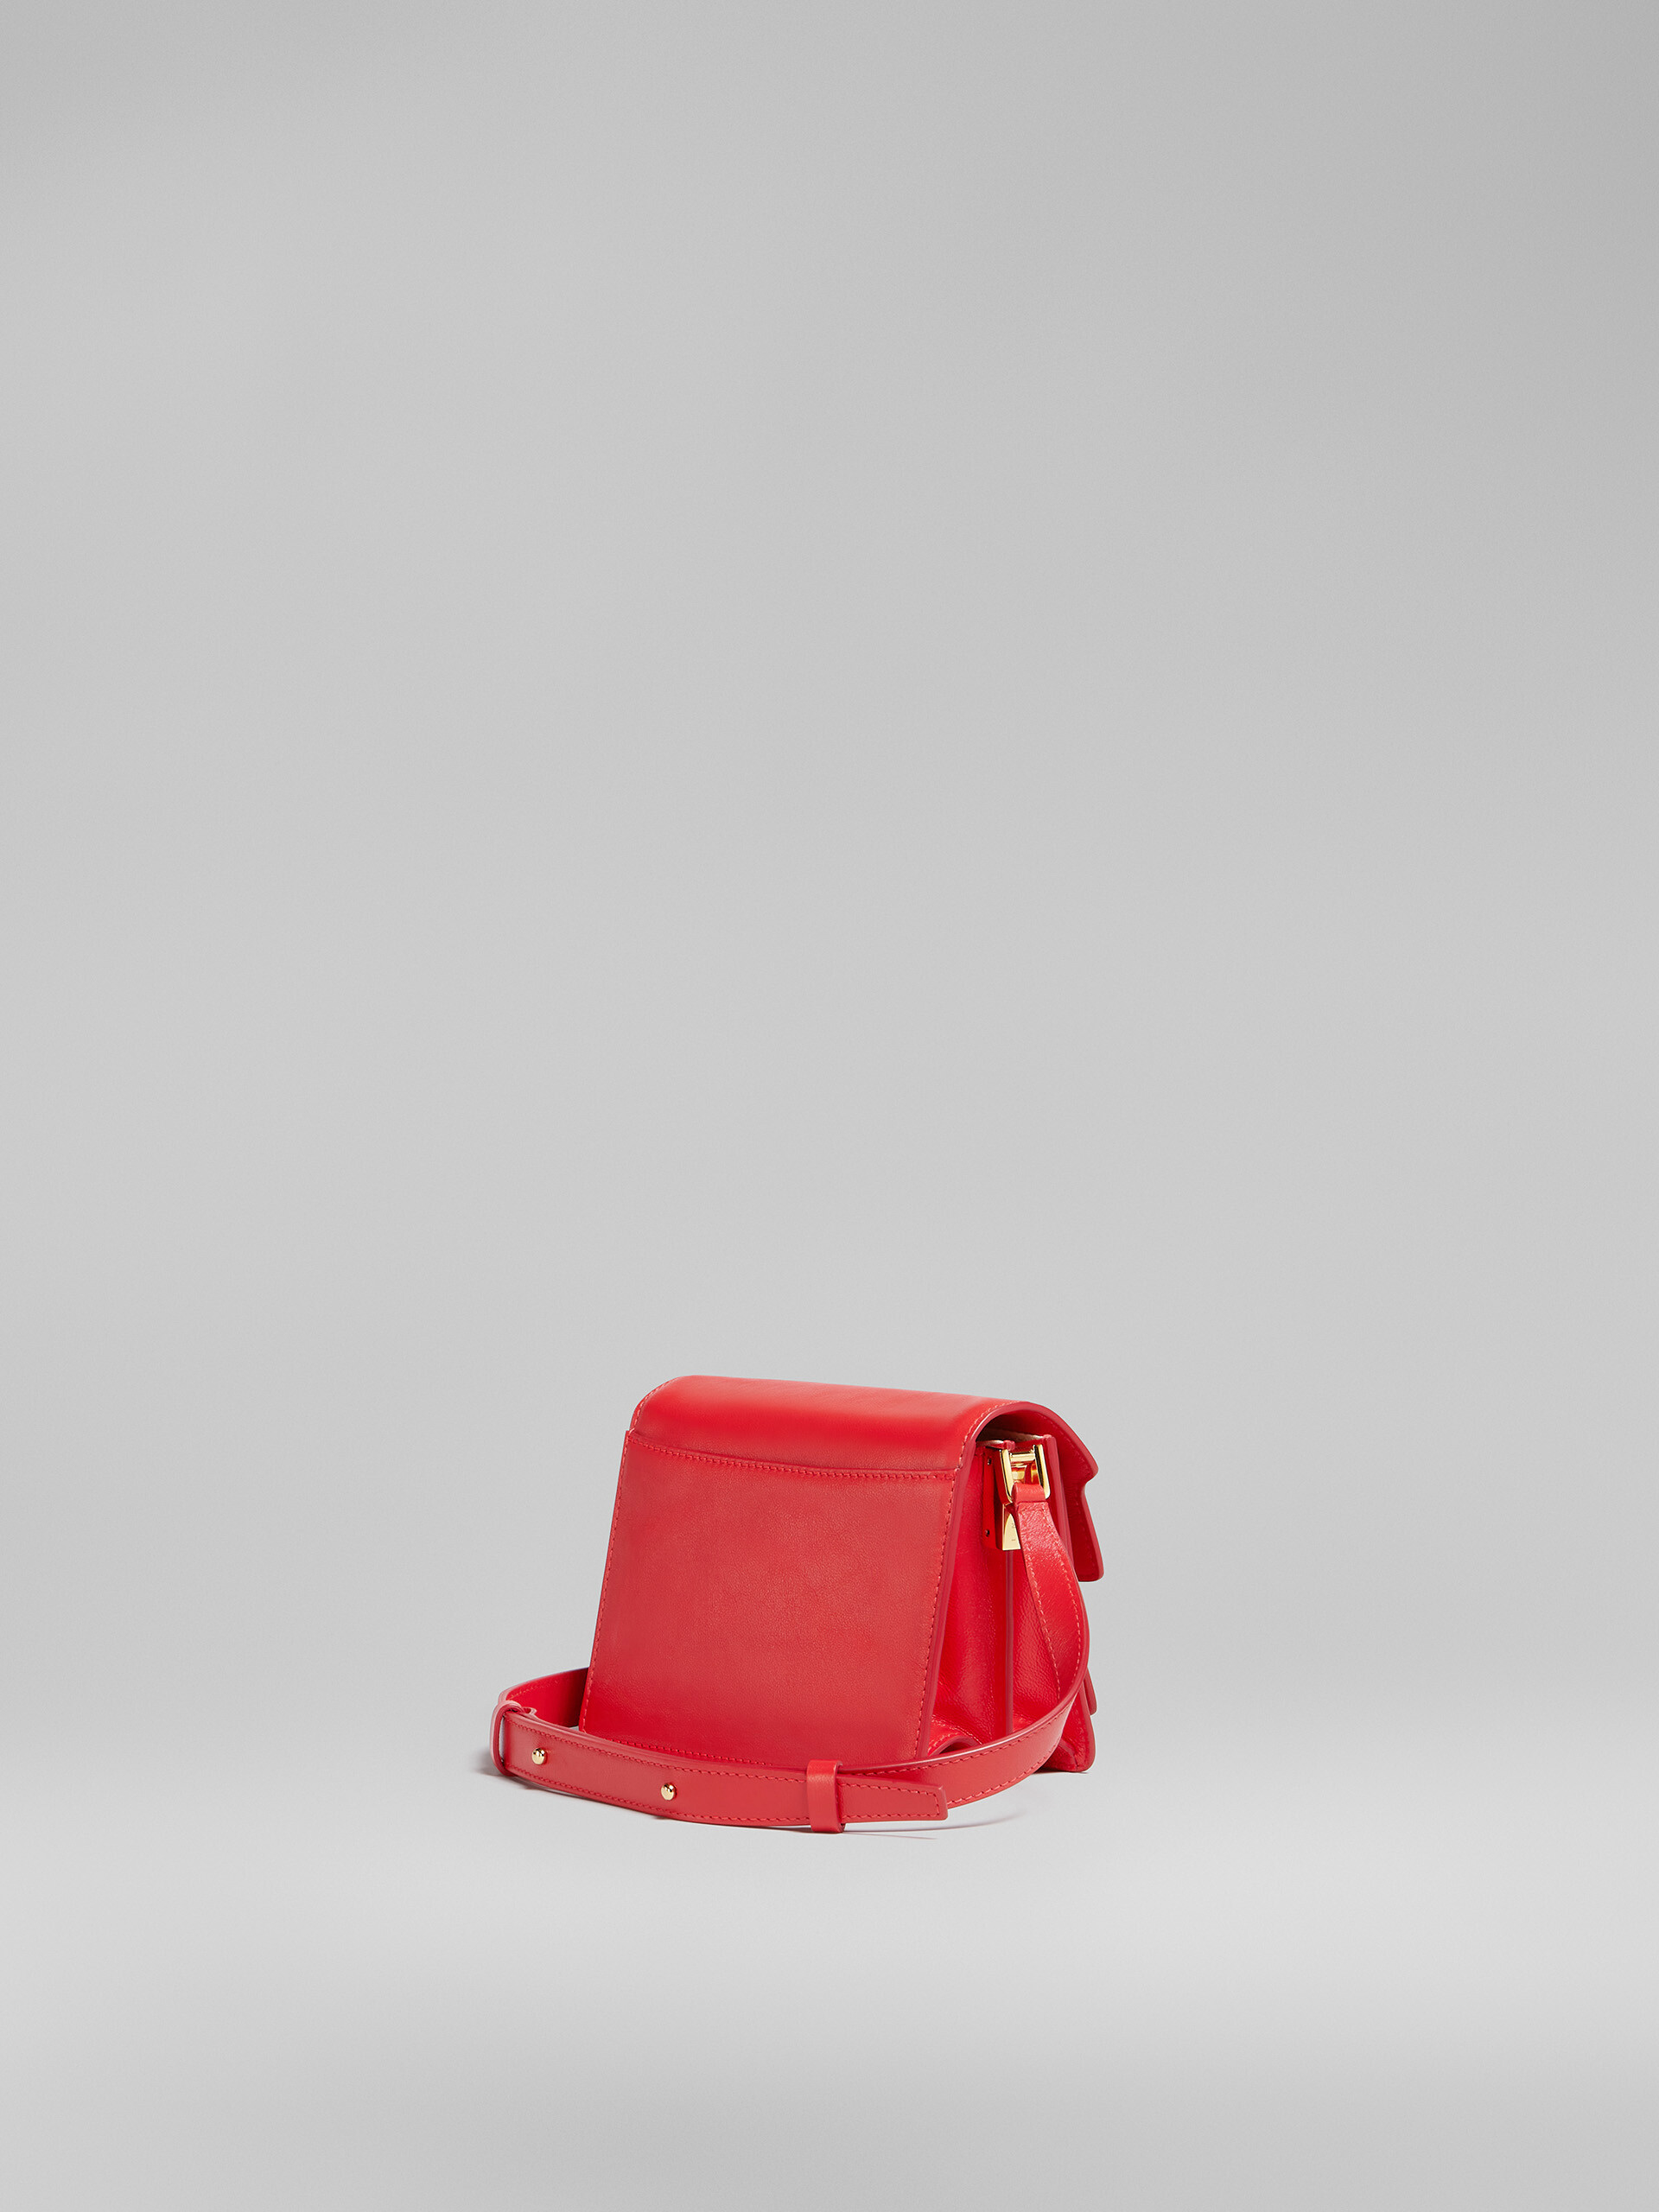 TRUNK SOFT mini bag in red leather - Shoulder Bag - Image 3